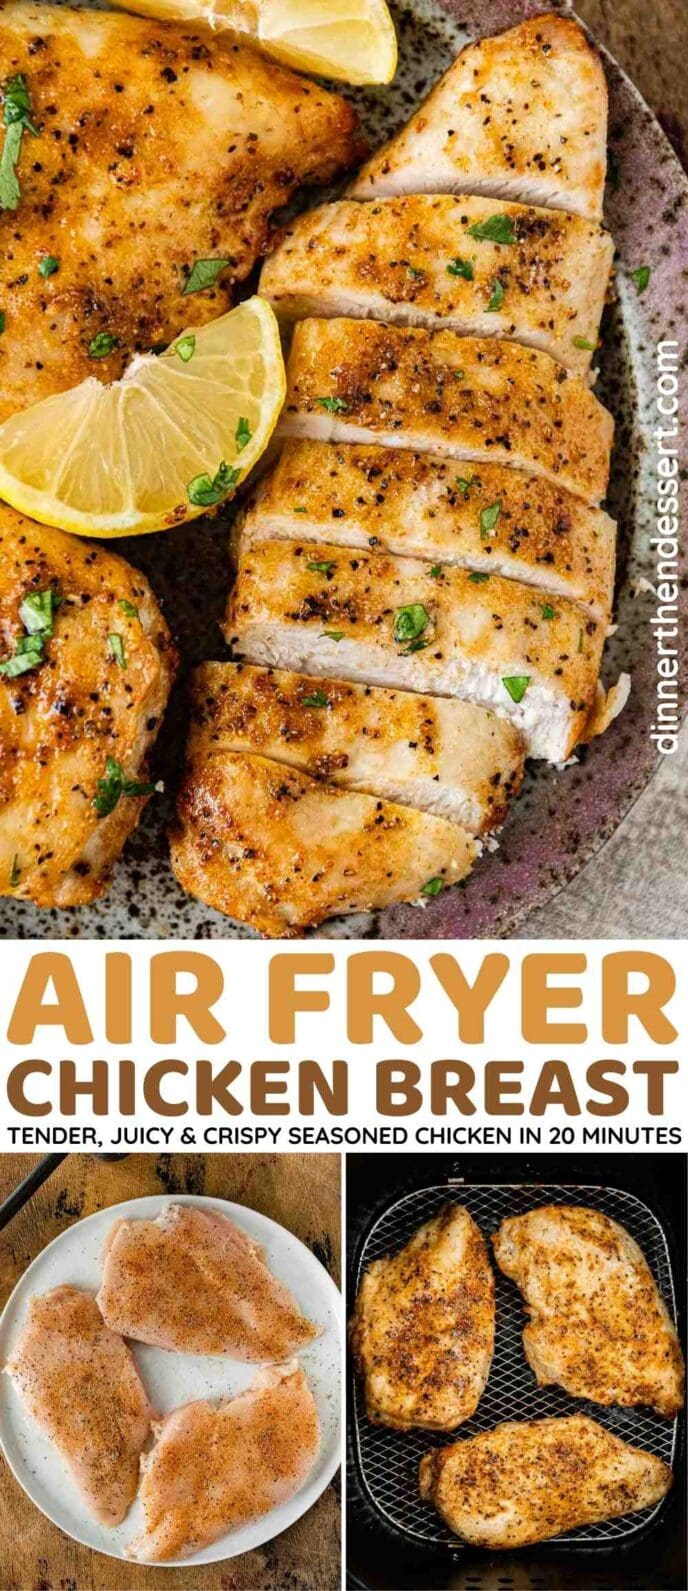 Air Fryer Chicken Breast collage